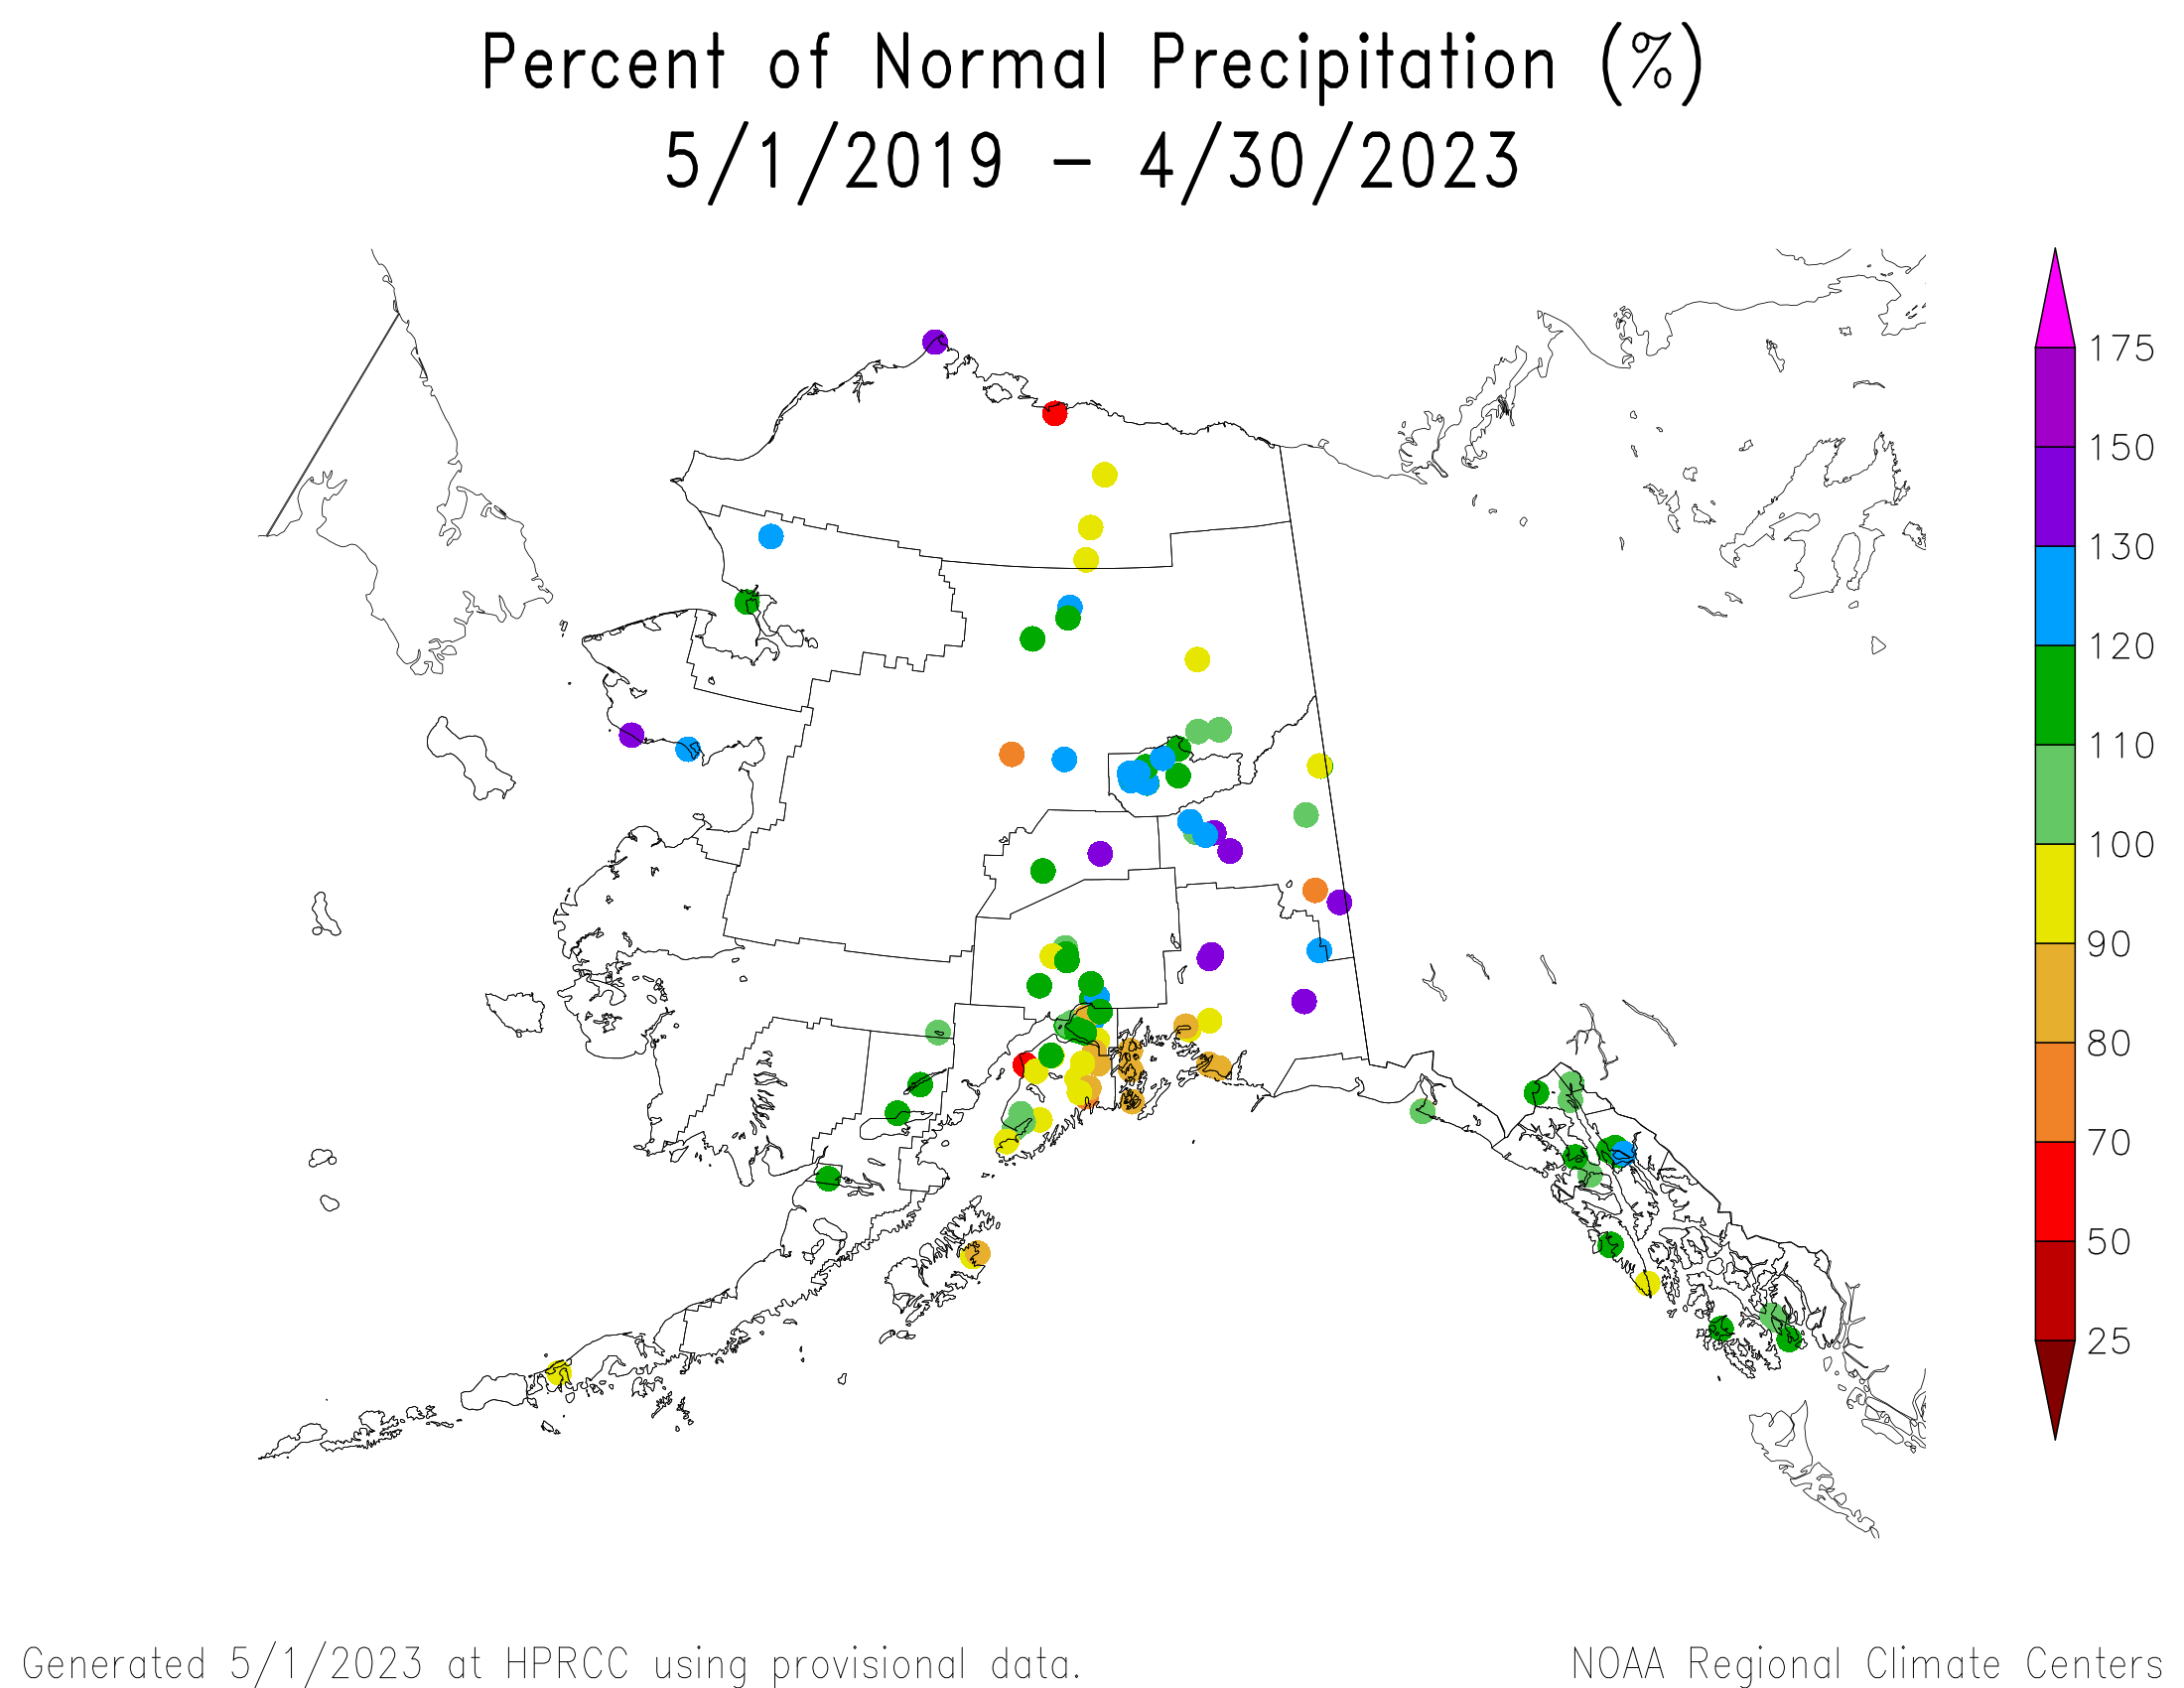 Alaska Percent of Normal Precipitation, May 2019-April 2023